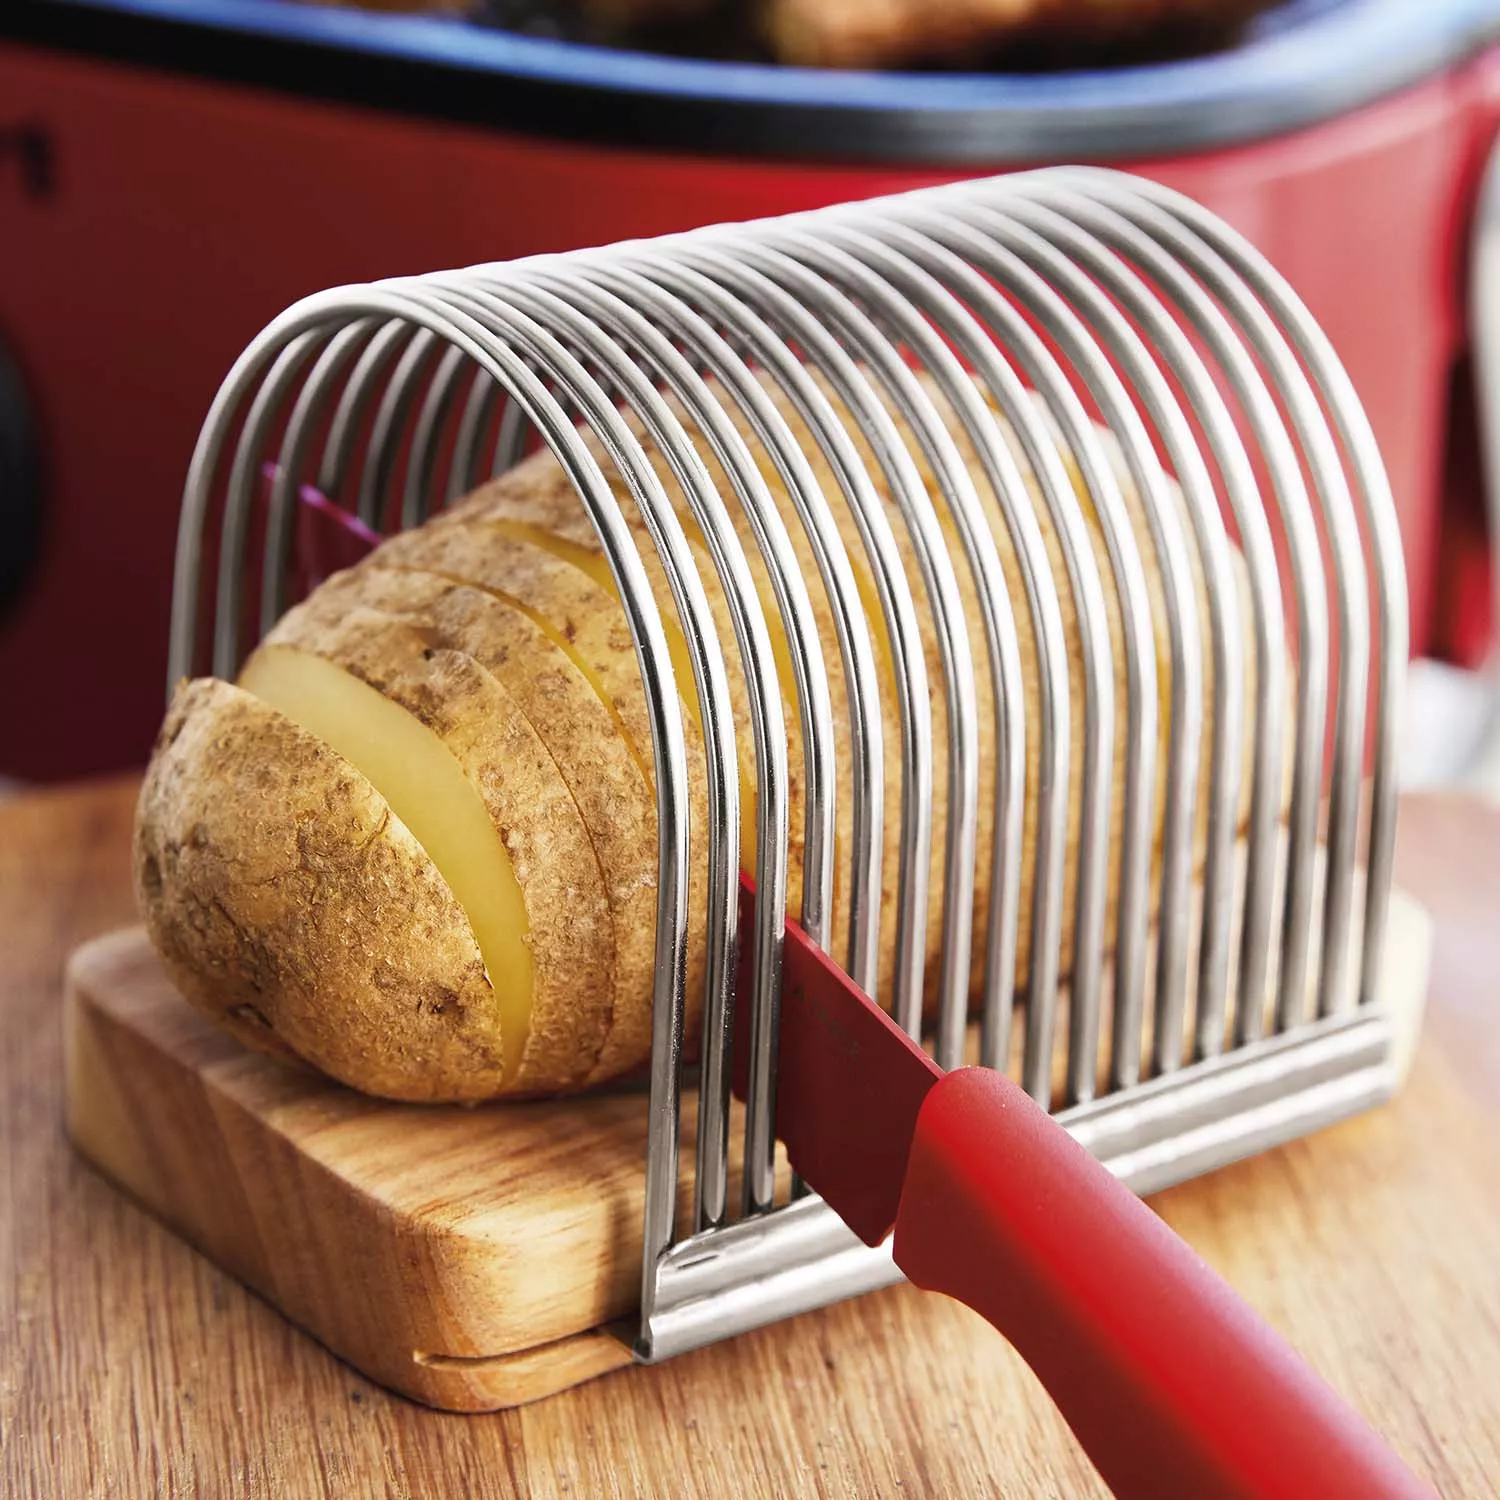 Hasselback potato cutting machine